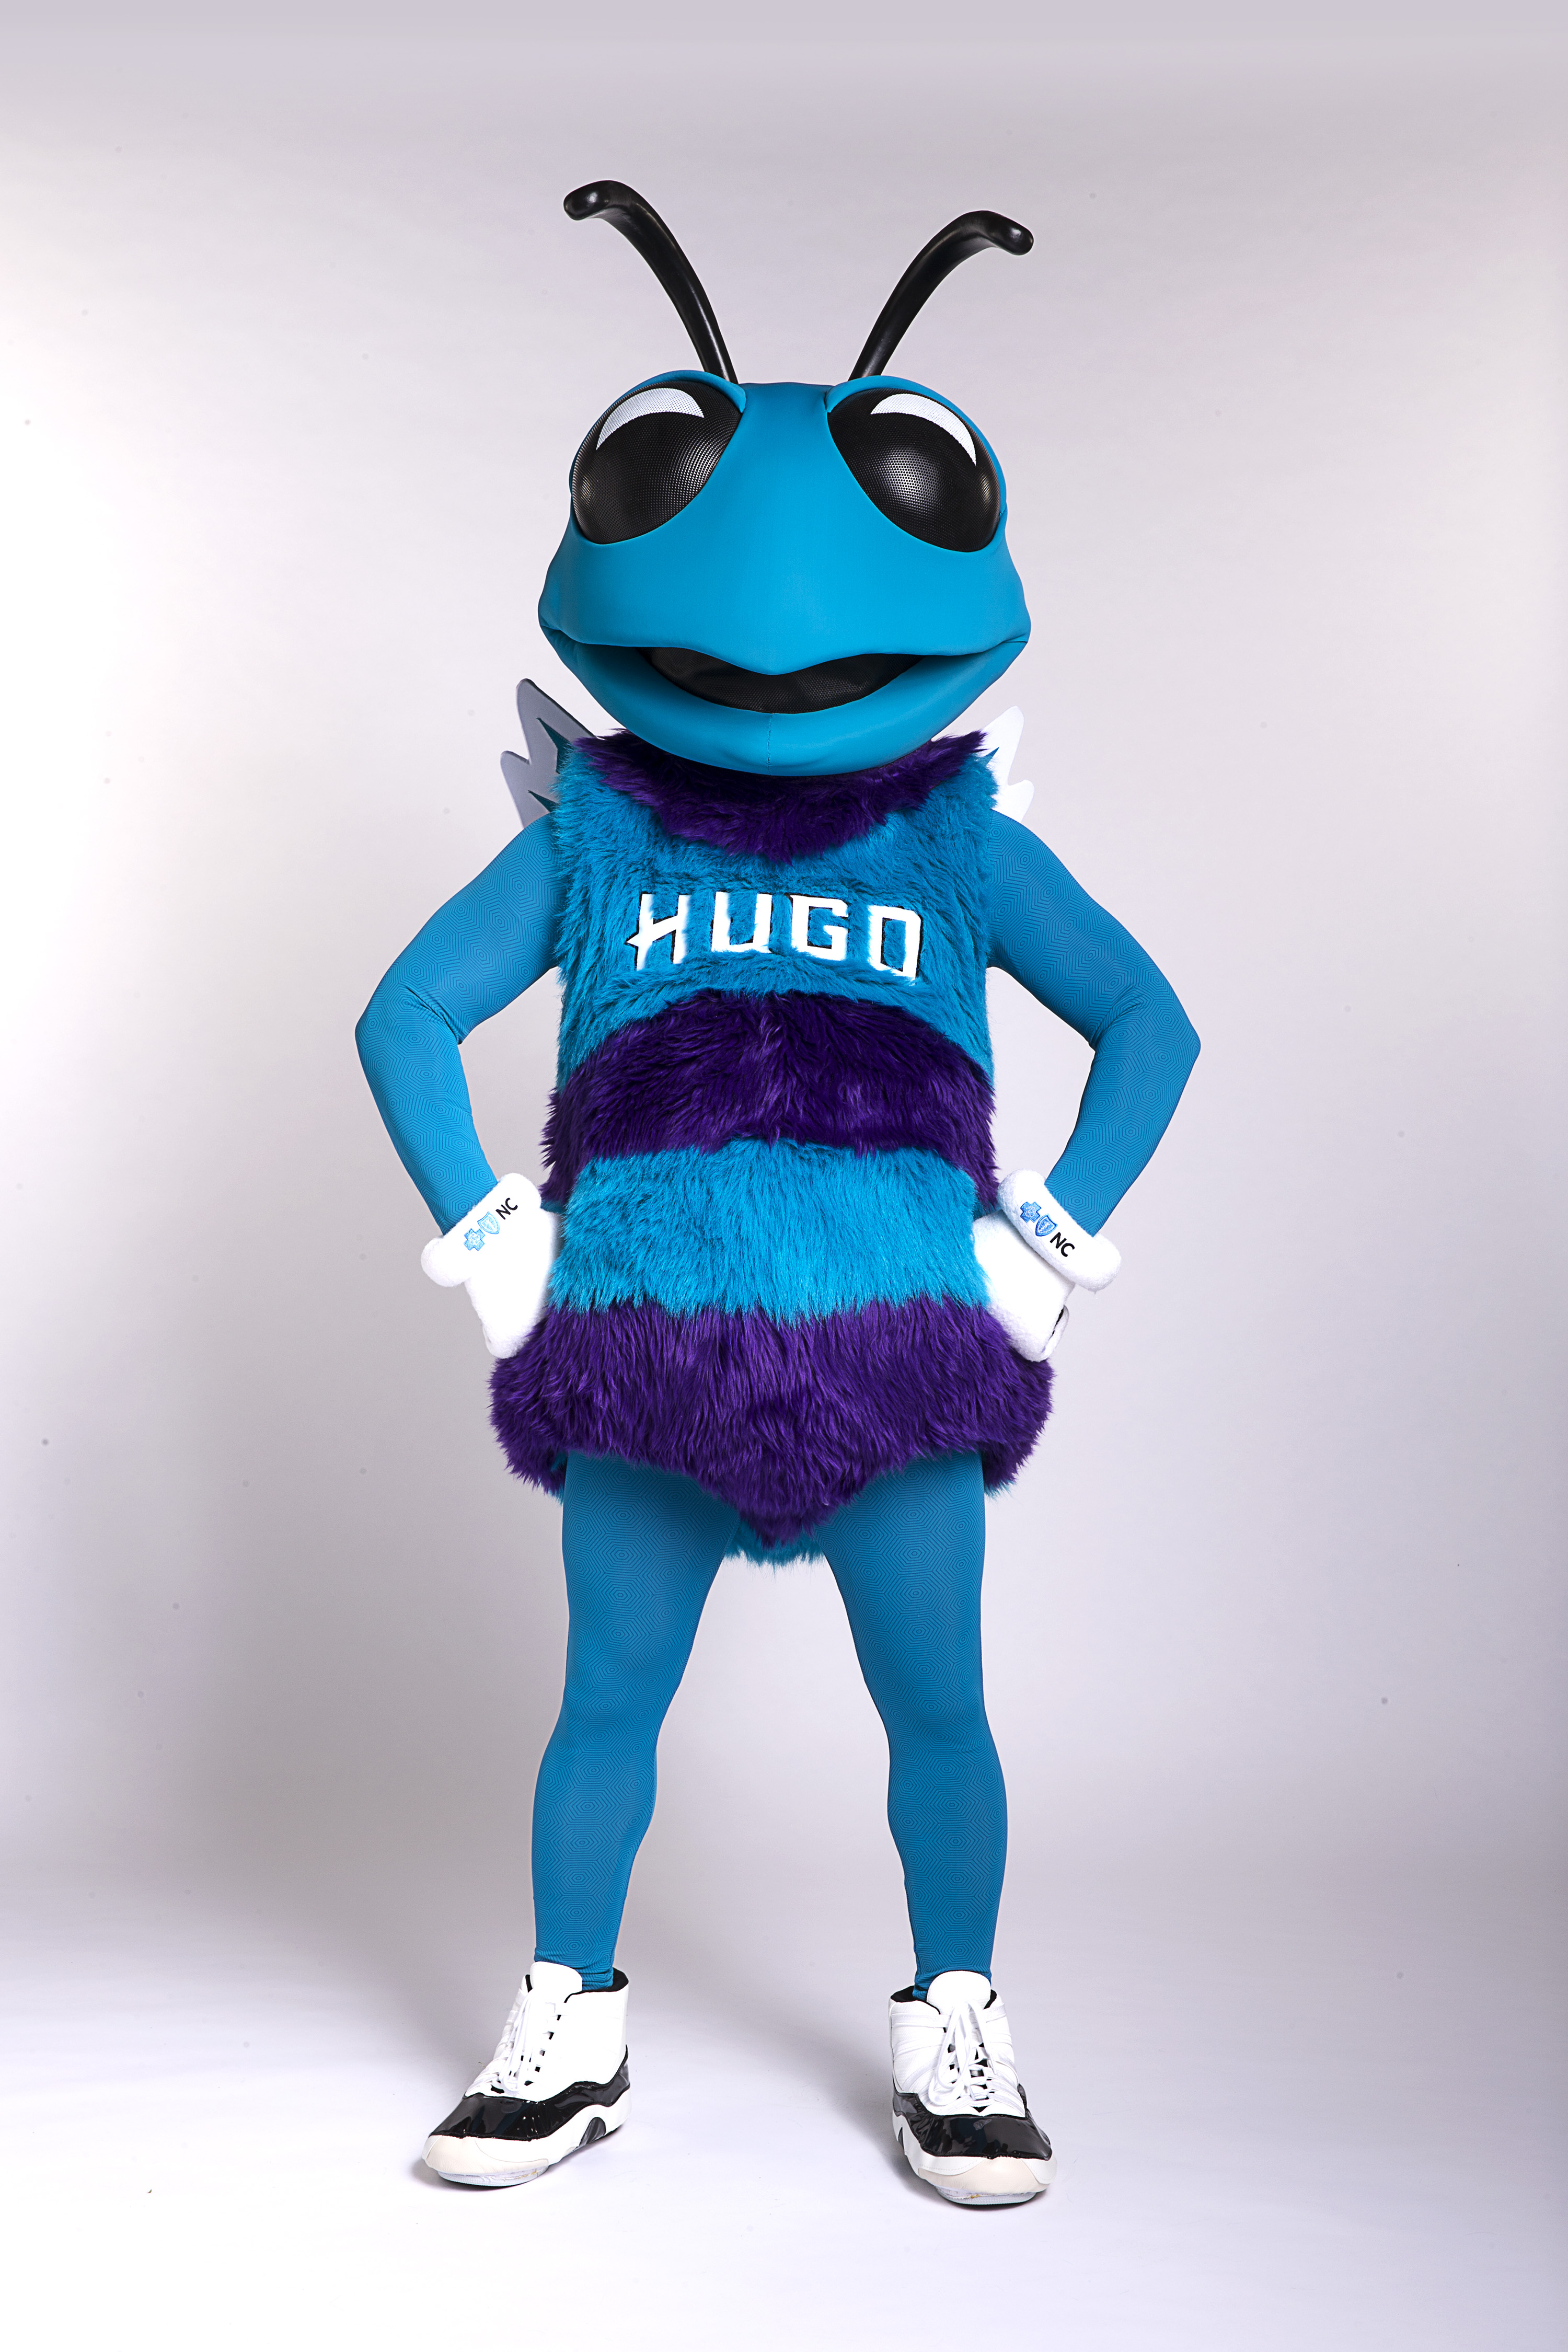 Hugo The Hornet